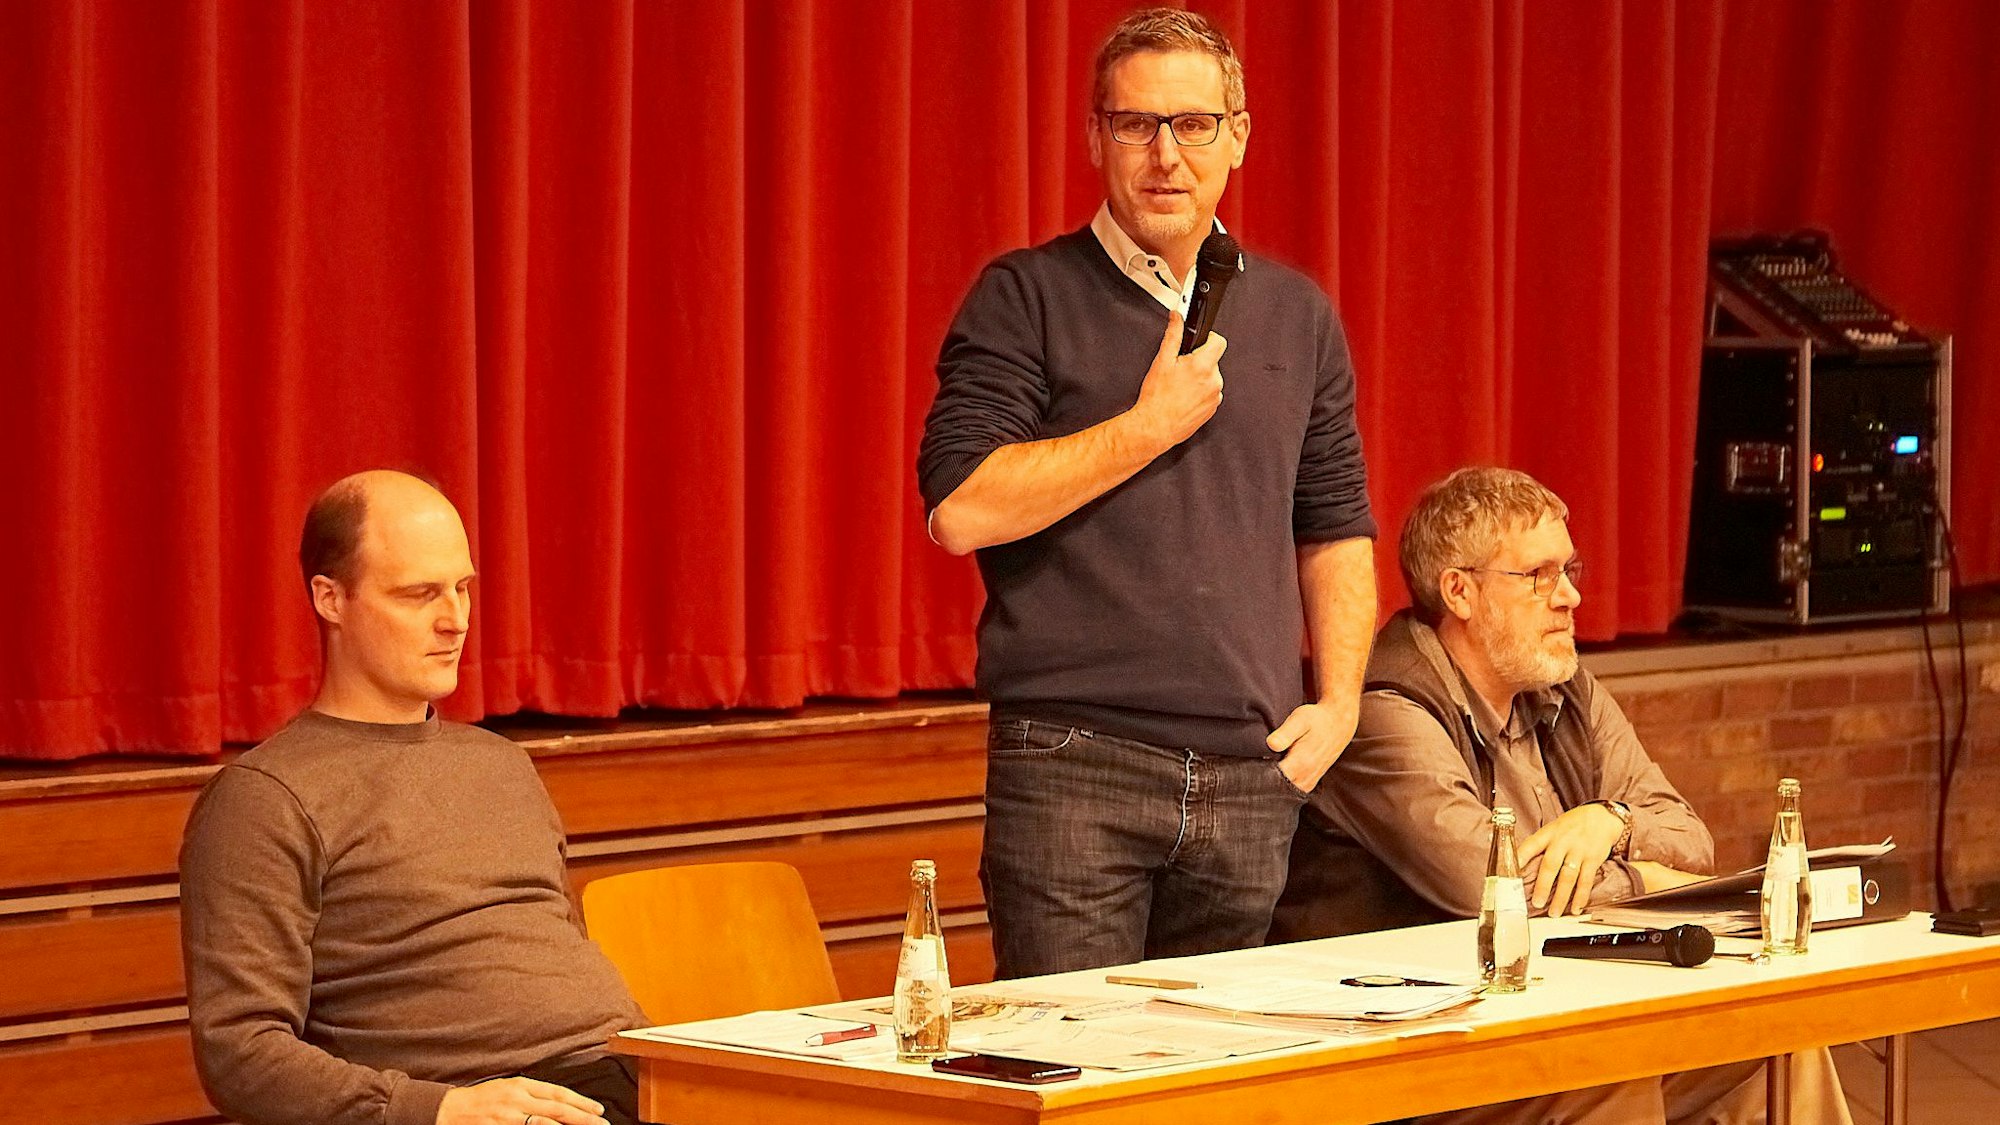 An einem Tisch vor einem roten Vorhang sitzen Simon Jung und Rainer Breinig. Nettersheims Bürgermeister Norbert Crump steht in der Mitte und hält ein Mikrofon in der Hand.